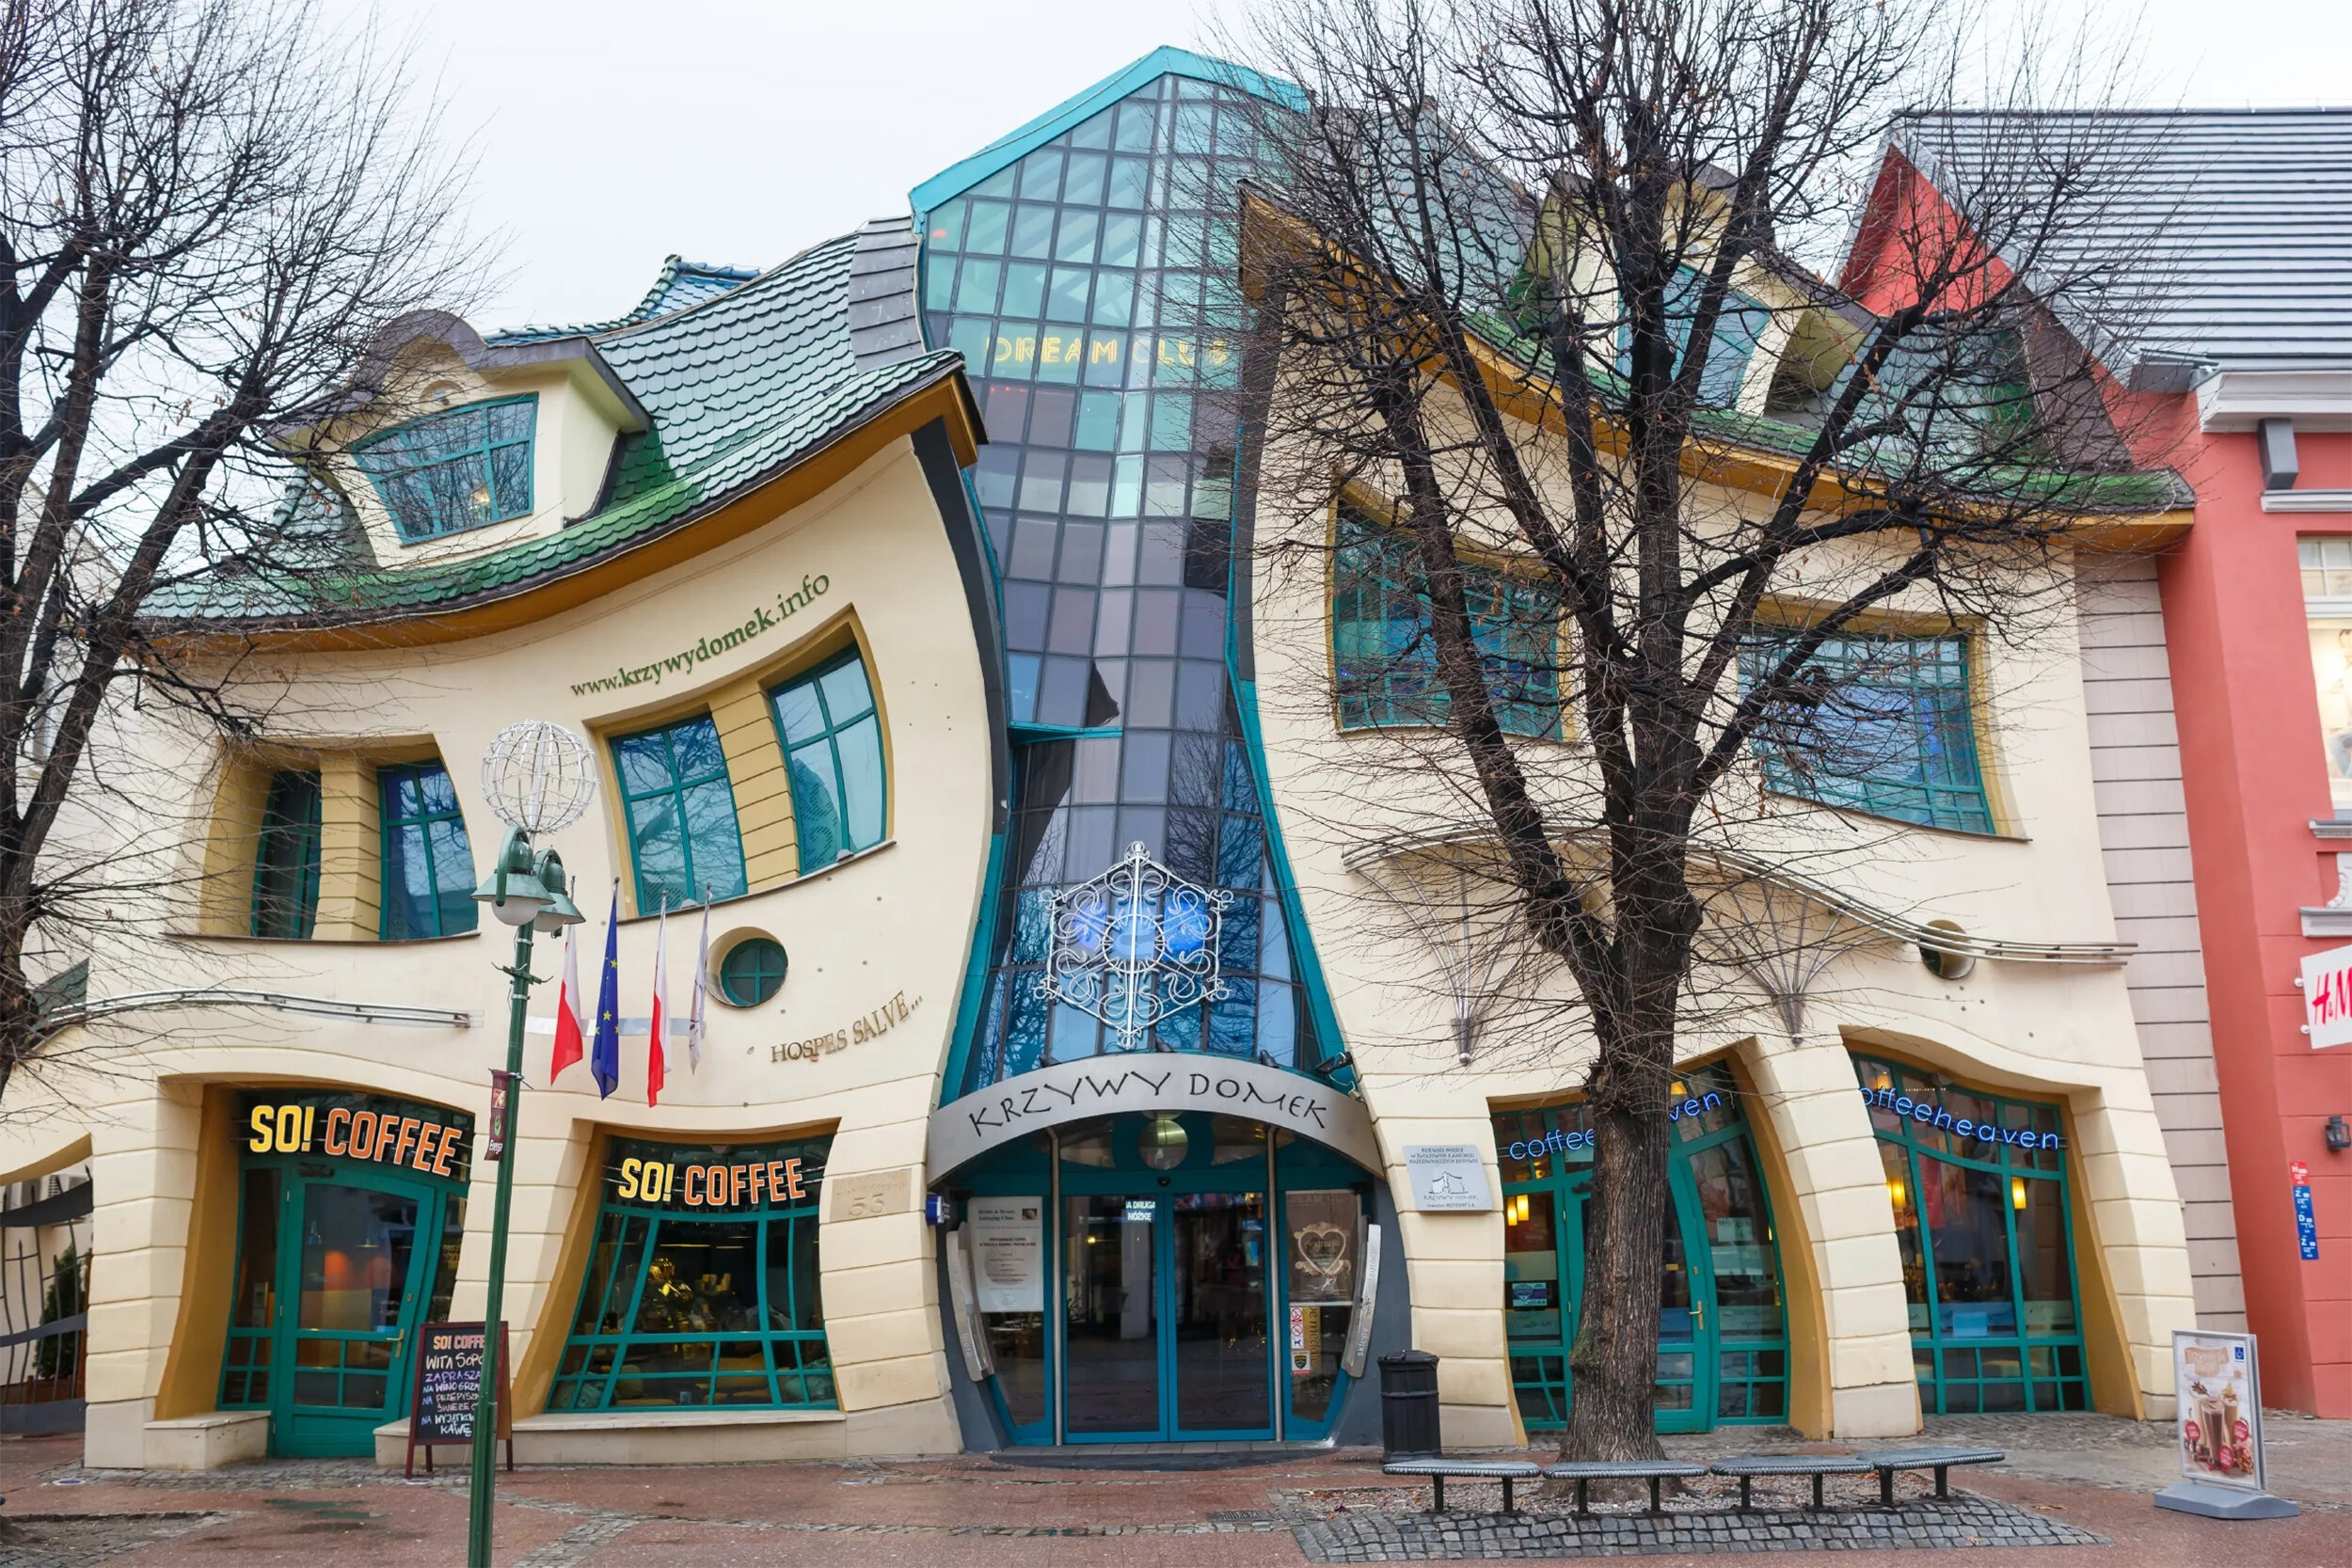 Кривой дом – не ошибка архитекторов, а забавное здание в Польше: фотопост